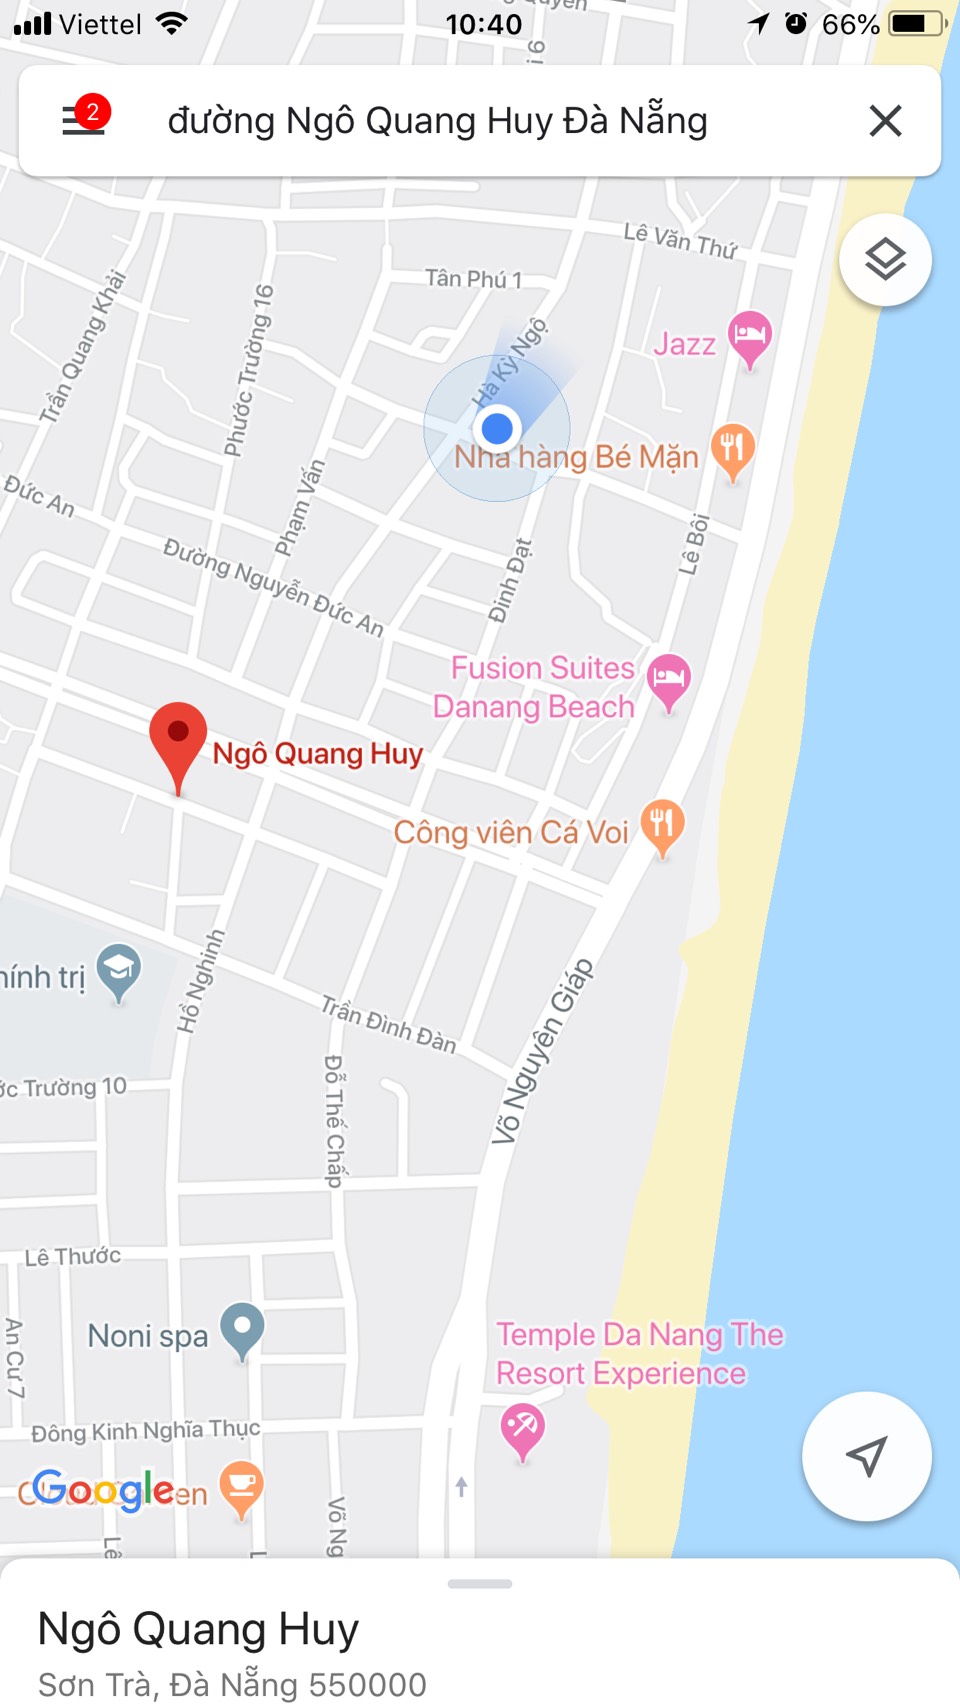 Bán đất ven biển Đà Nẵng đẹp, 2 MT đường Hồ Nghinh và Ngô Quang Huy,141 m2.LH:0905.606.910

 10331502